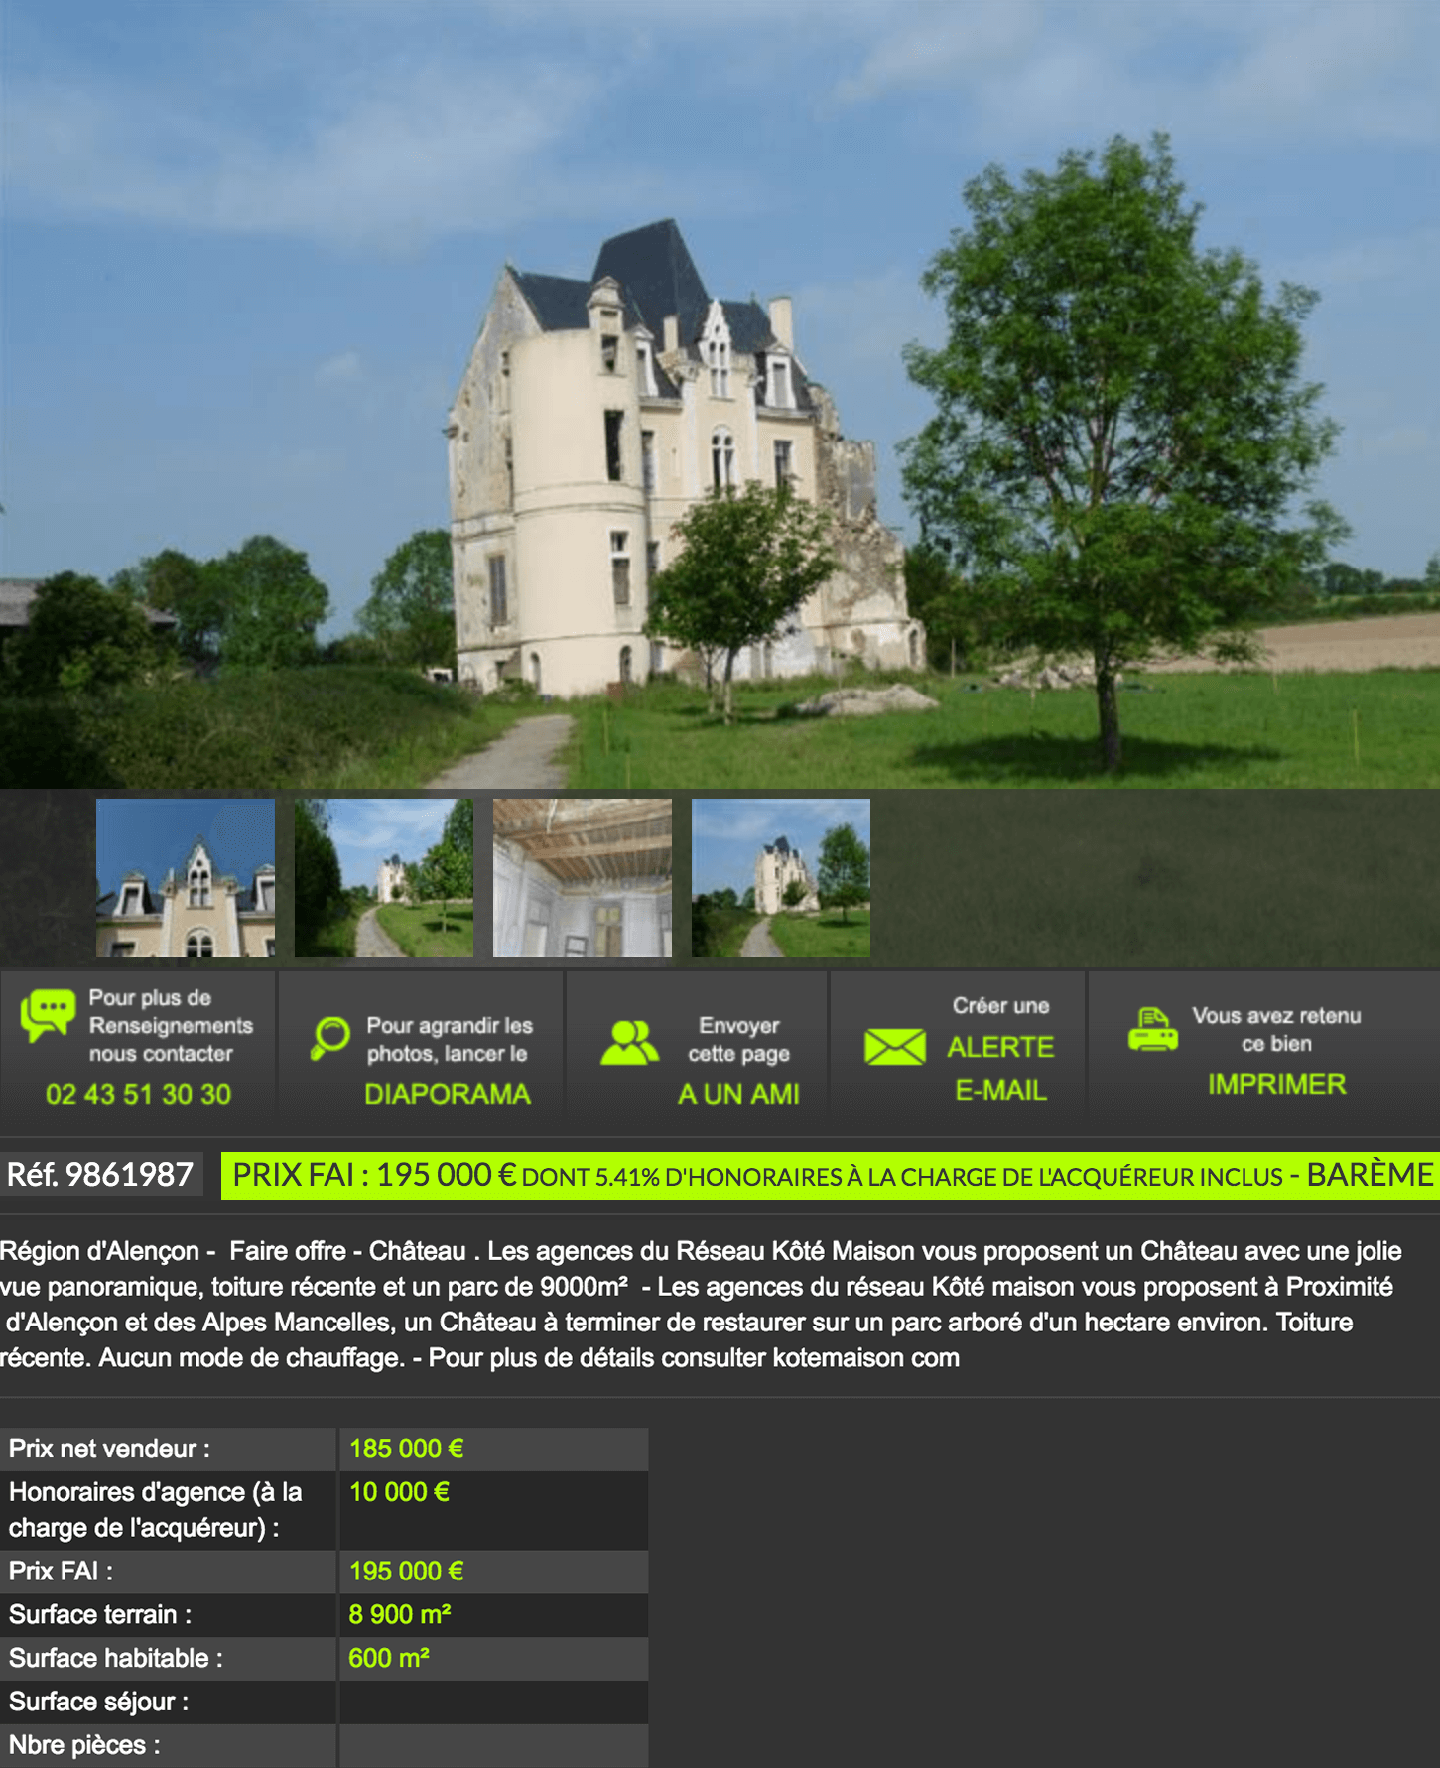 Замок жилой площадью 600 м² на участке 8900 м² продается за 195 000 €, включая вознаграждение агентства